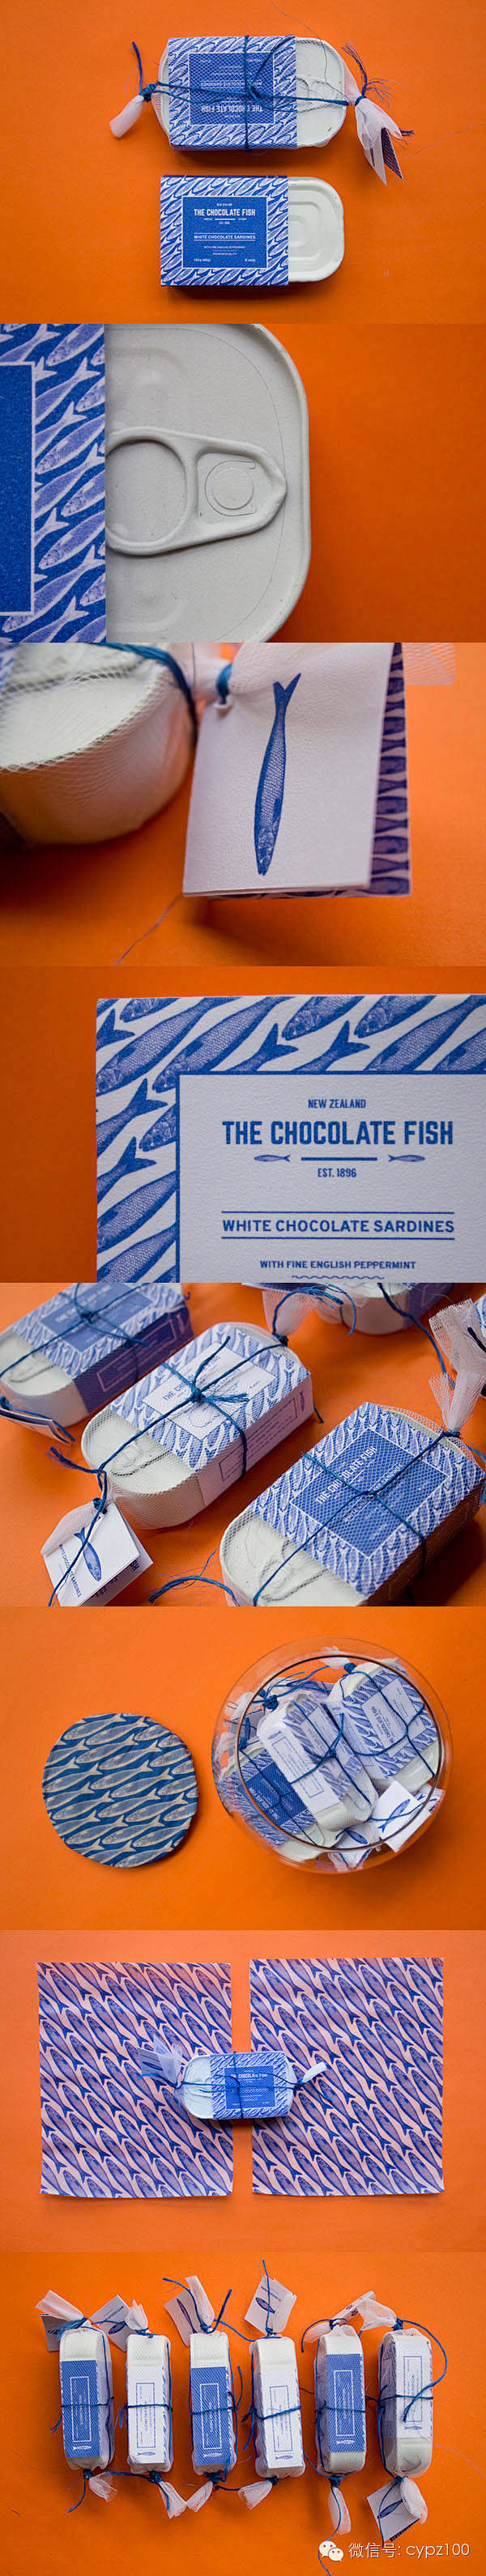 创意巧克力鱼品牌包装设计
 
--- 来...